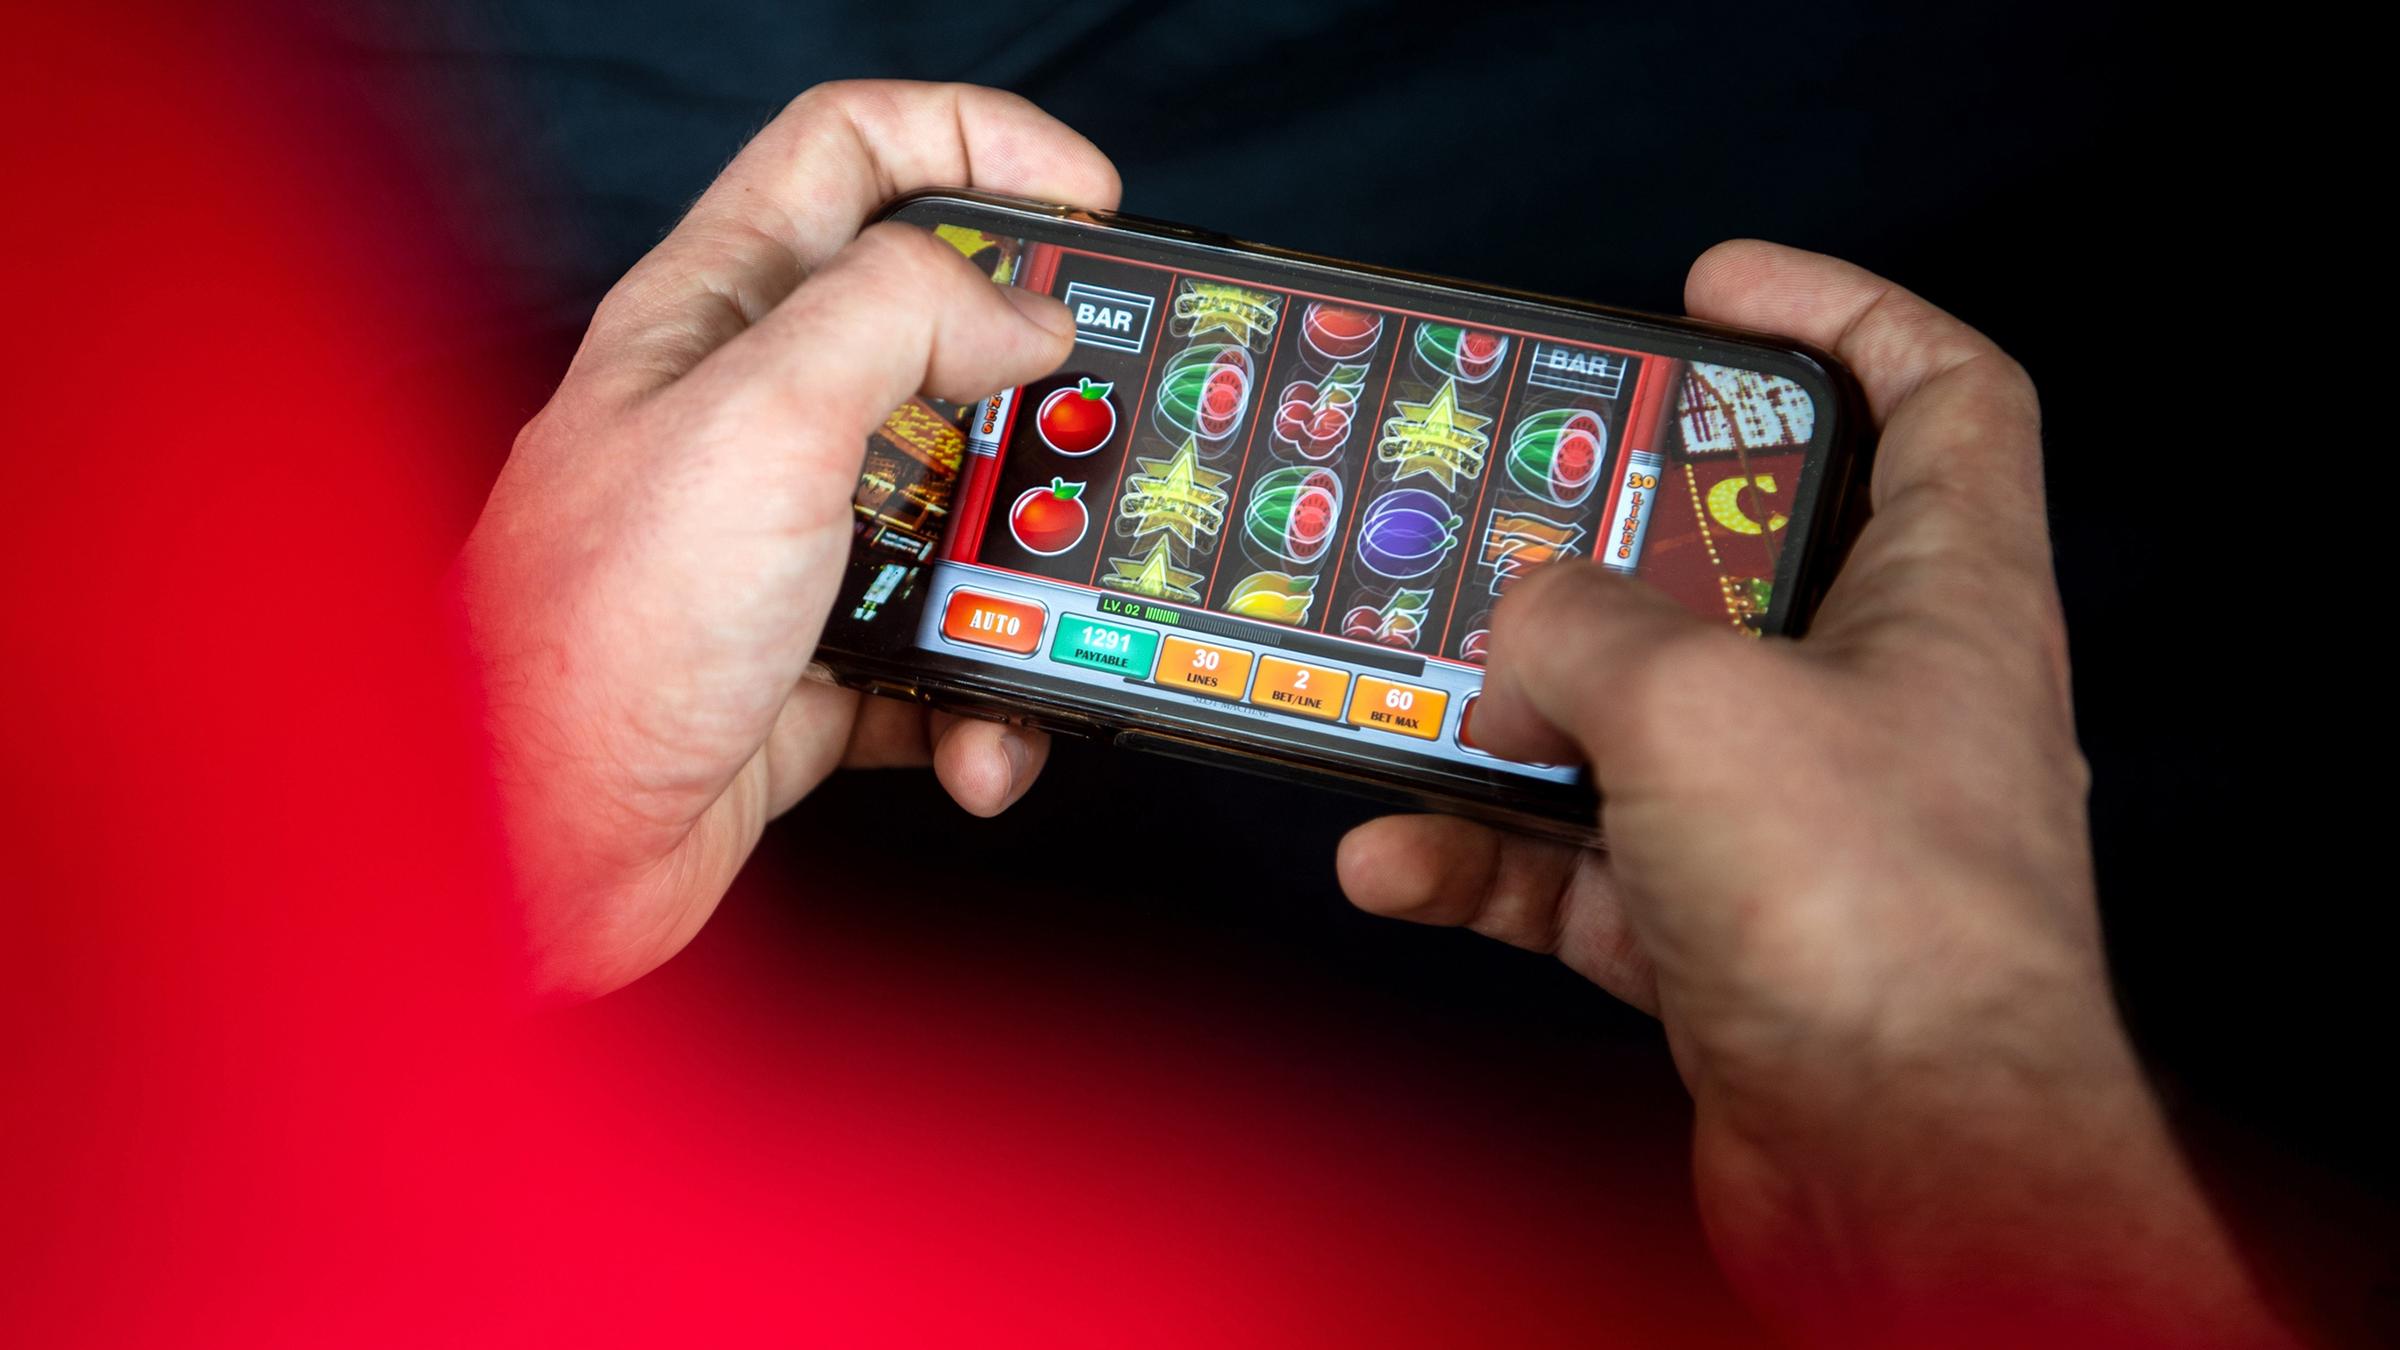 Zwei Hände halten ein Smartphone, darauf wird ein Online-Spiel gespielt.